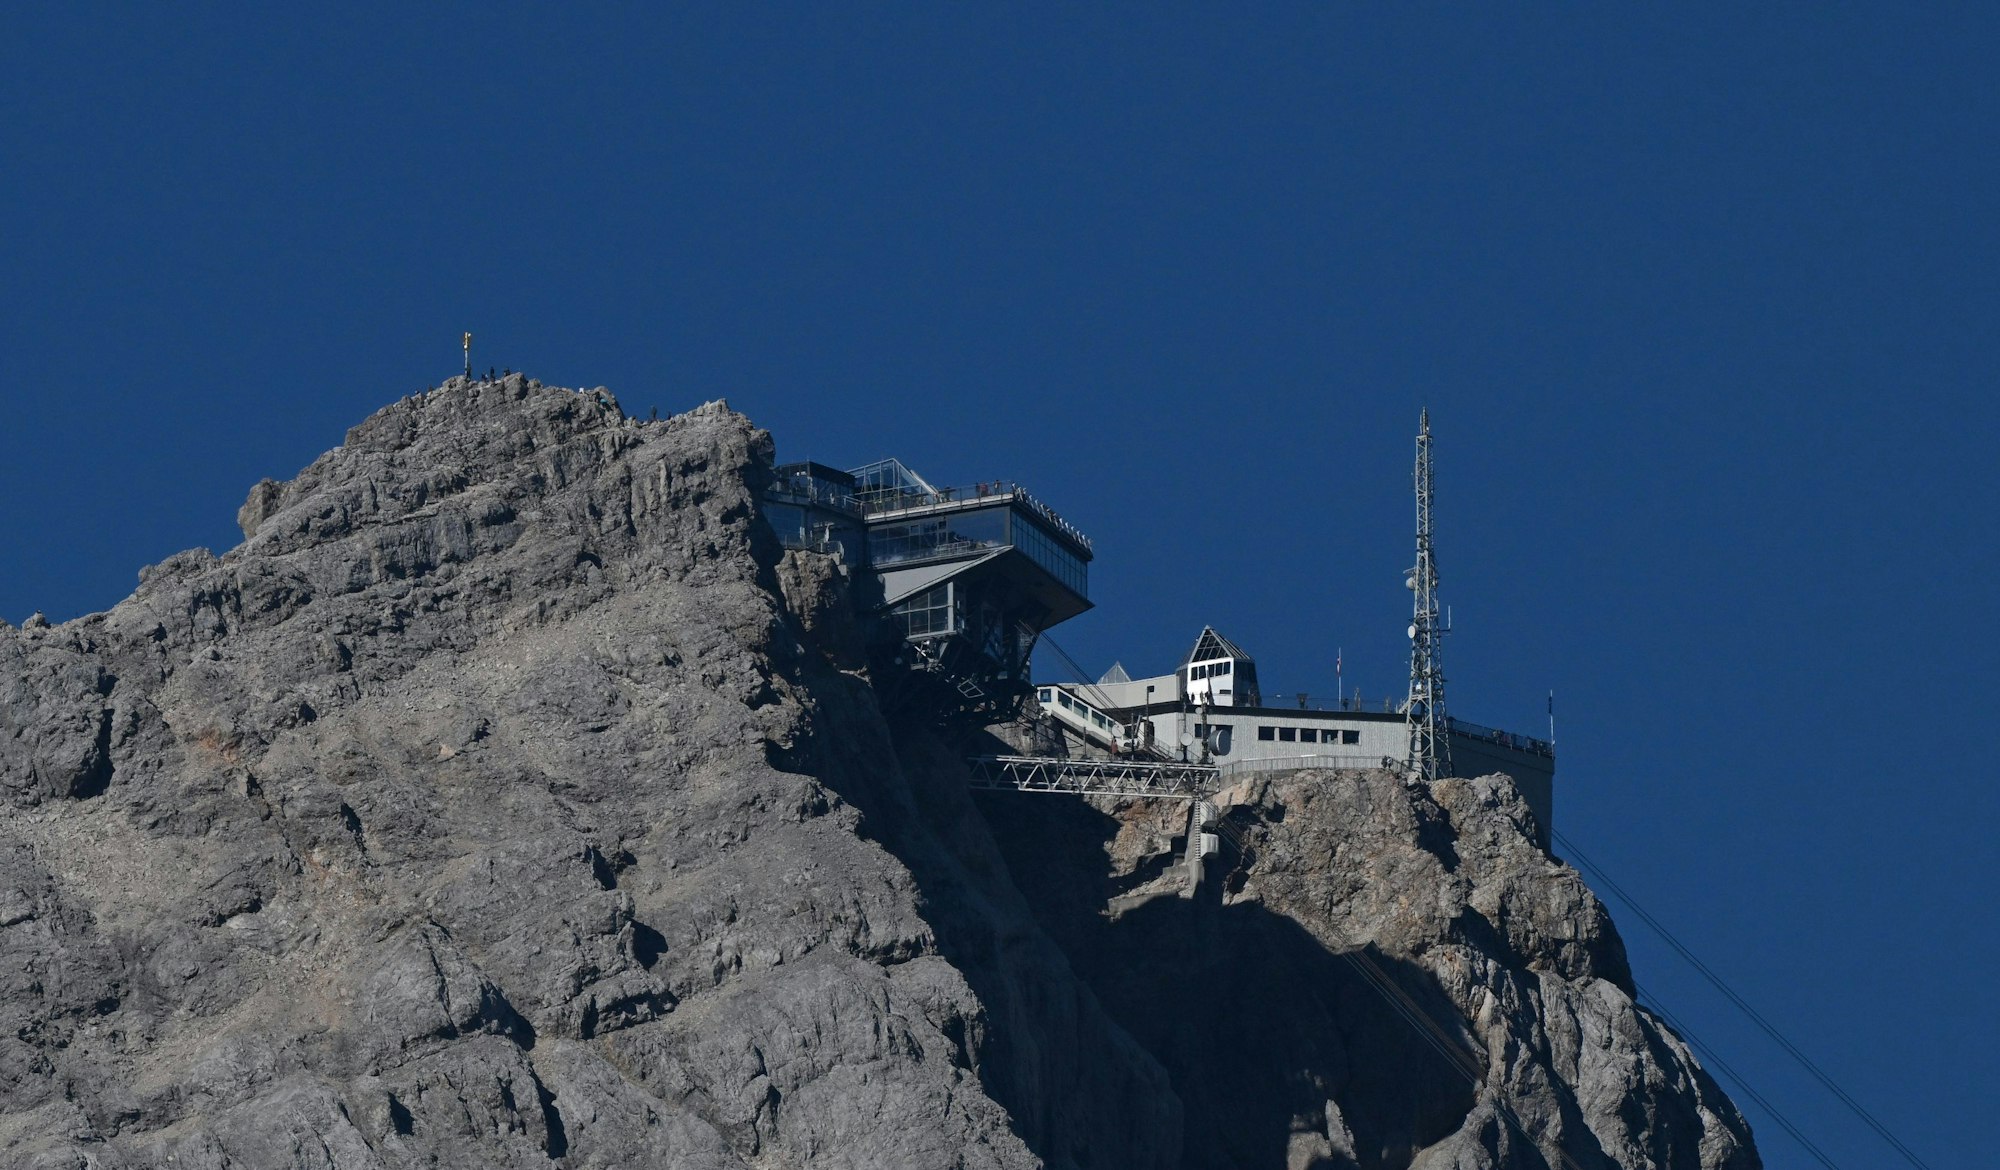 Die Berstationen der deutschen (l) und tiroler Zugspitzgondel sind am 8. August 2022 neben dem Zugspitzgipfel zu sehen. Von Gletschereis keine Spur.